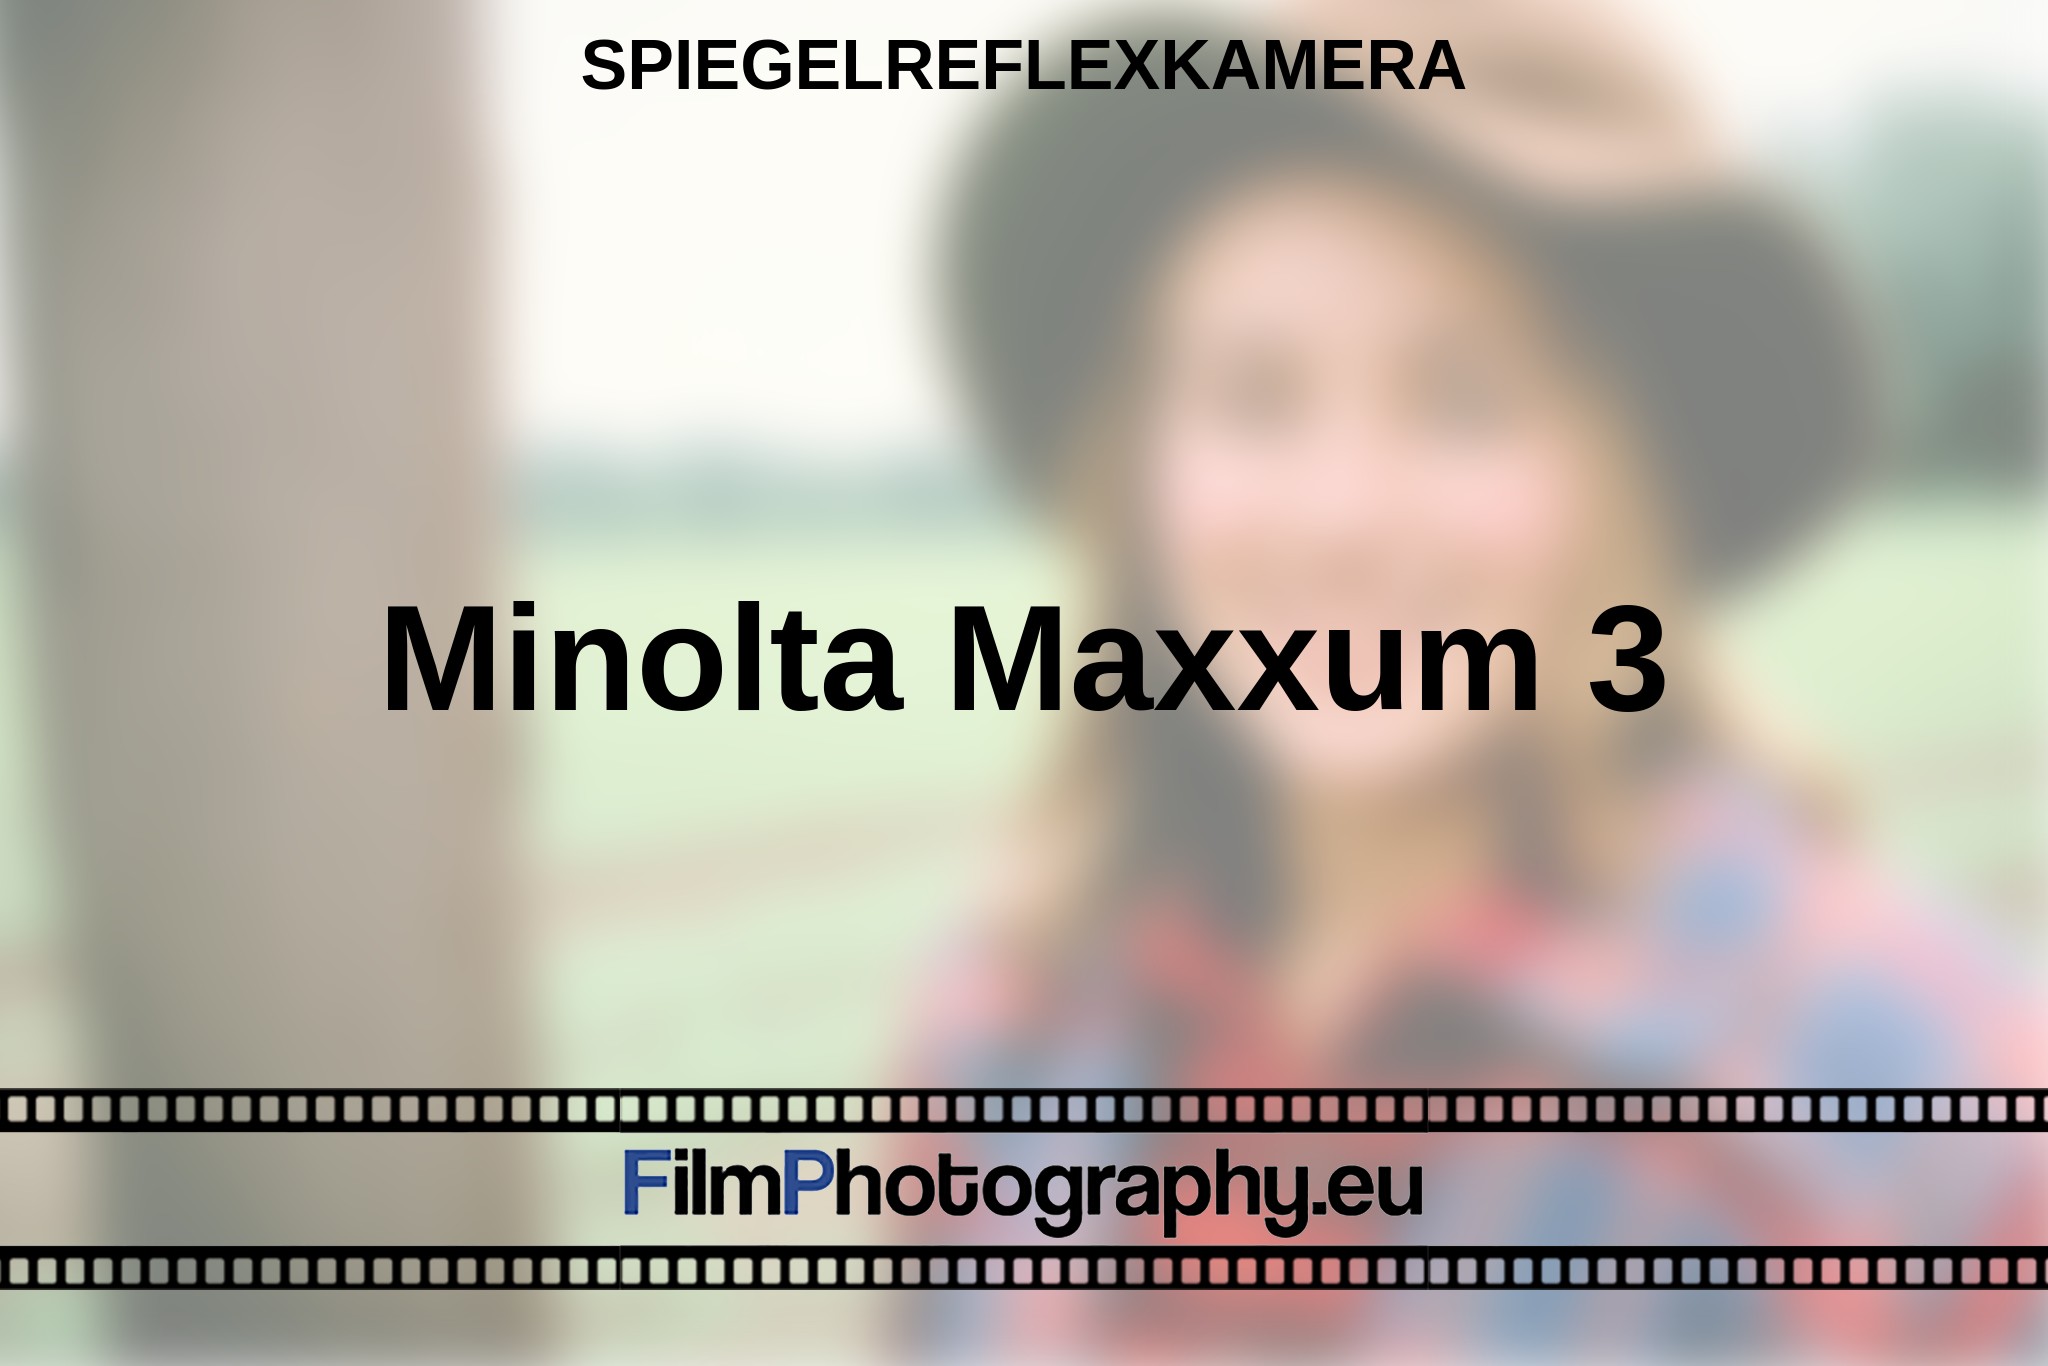 minolta-maxxum-3-spiegelreflexkamera-bnv.jpg